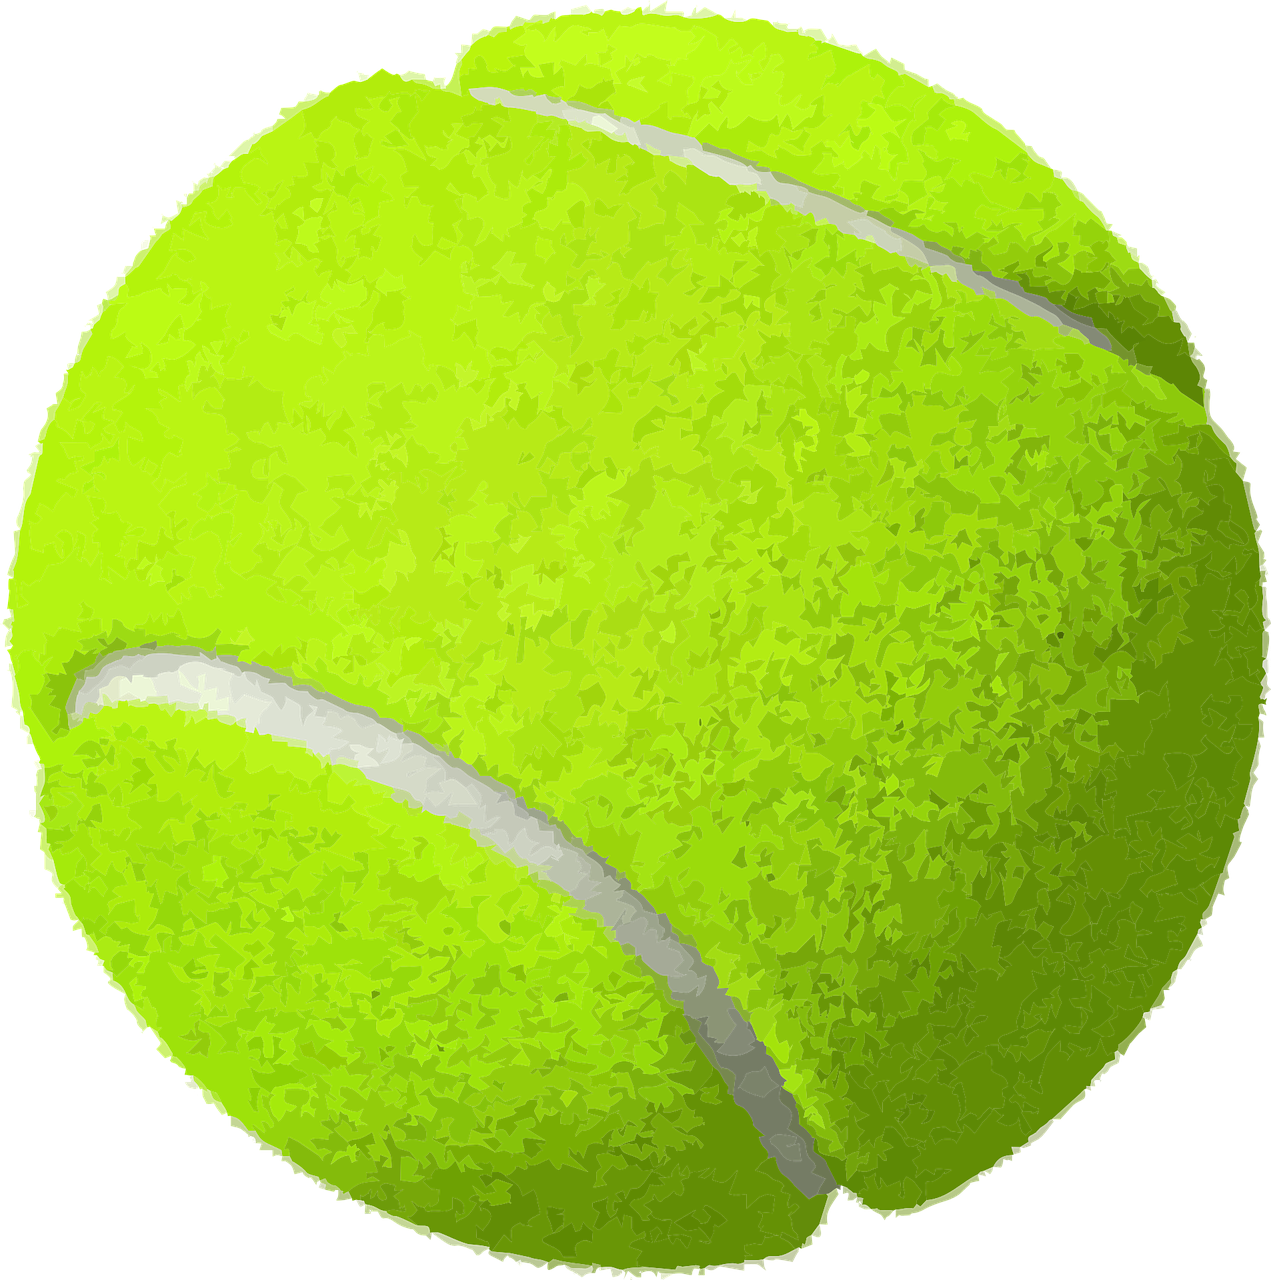 Imagens de bola de tenis png